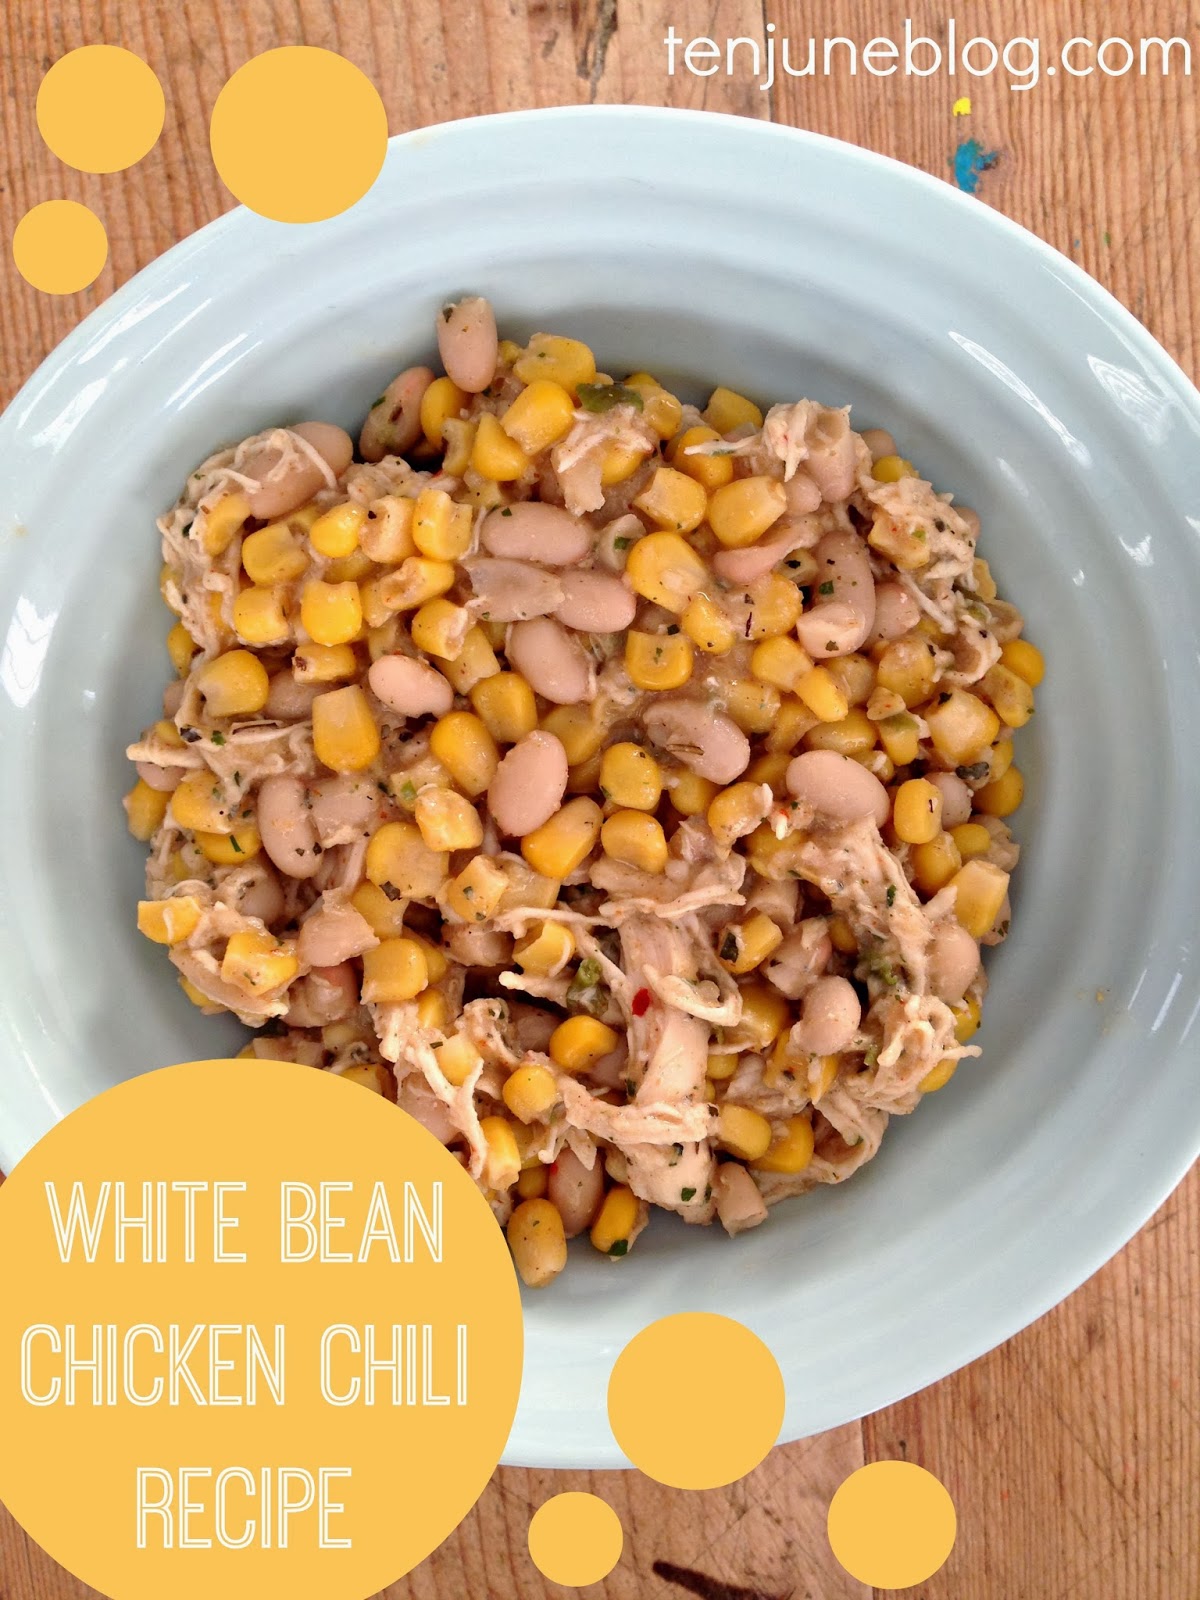 Ten June: Easy Winter Recipe: White Bean Chicken Chili Recipe